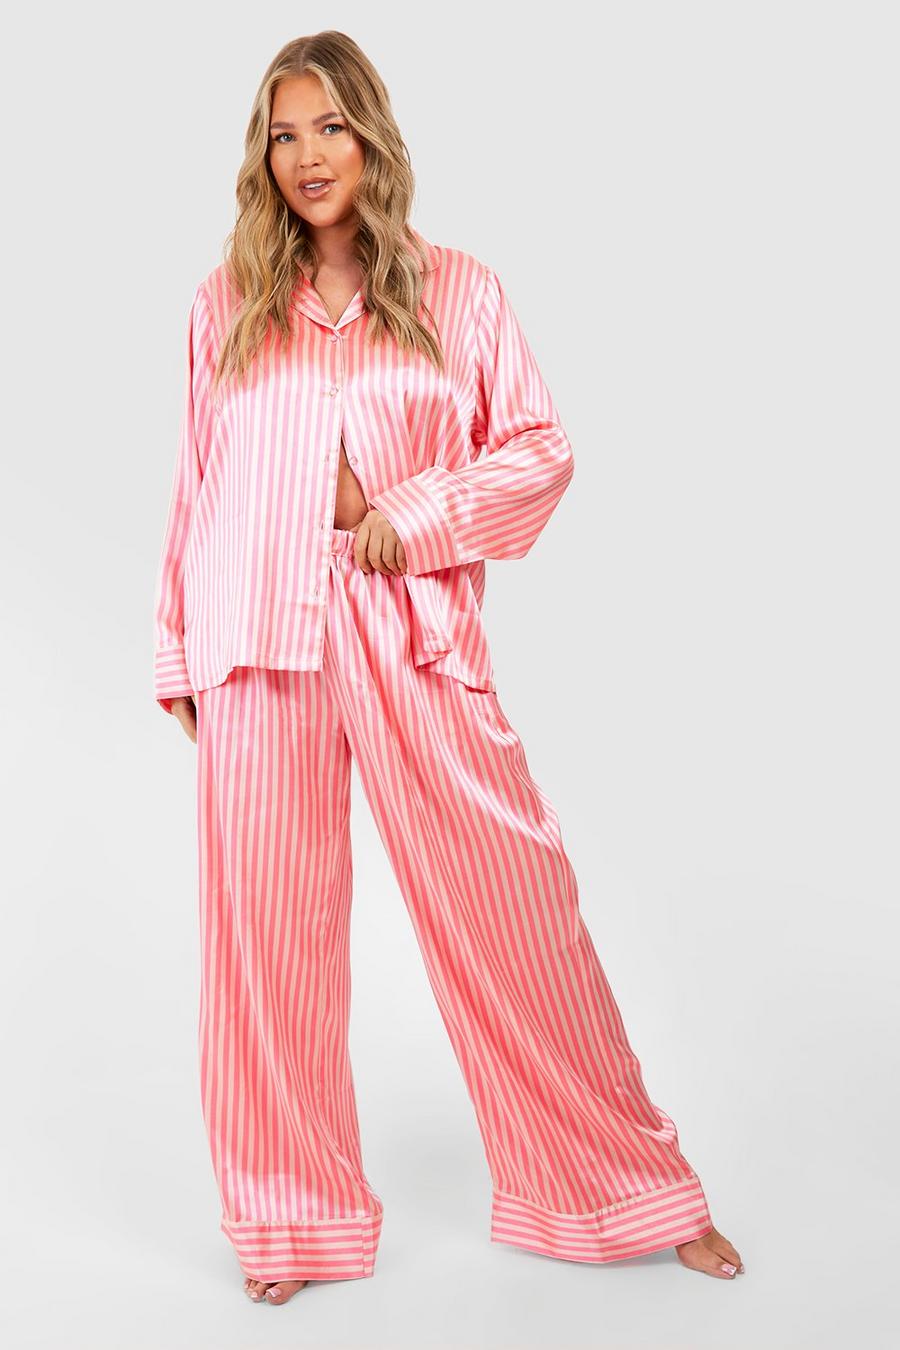 Candy pink Plus Satijnen Gestreepte Pyjama Set Met Broek